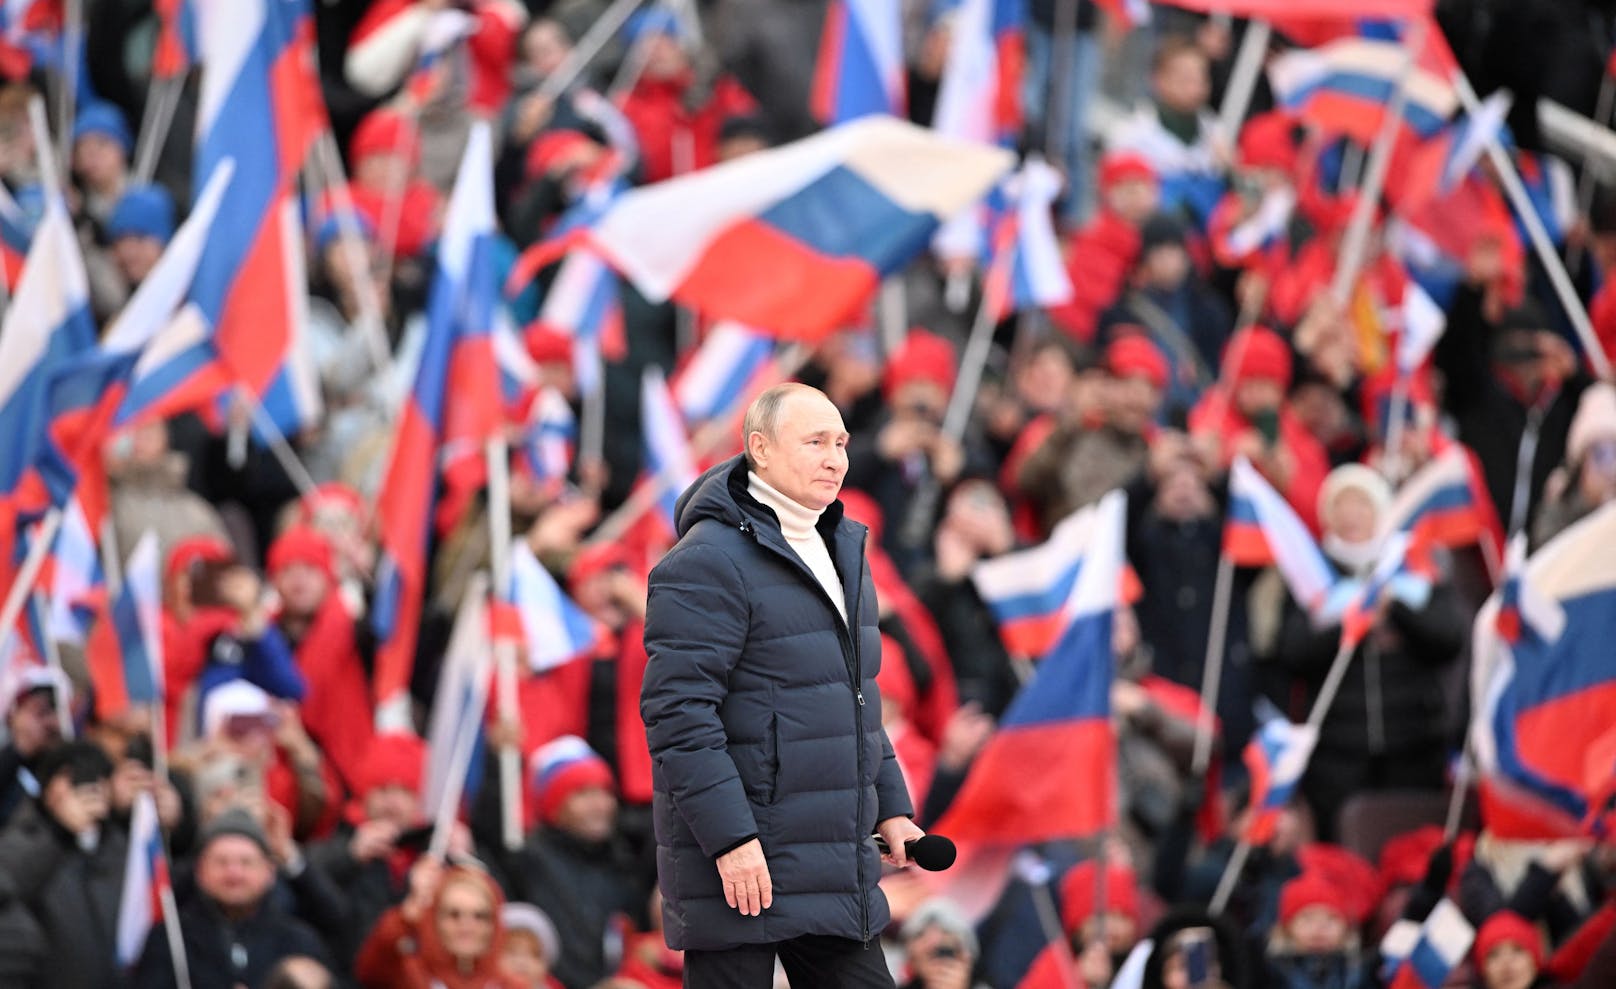 Die Menschen riefen: "Für Russland. Für den Sieg." Über der Bühne, auf der Putin auftrat, stand: "Für eine Welt ohne Nazismus".